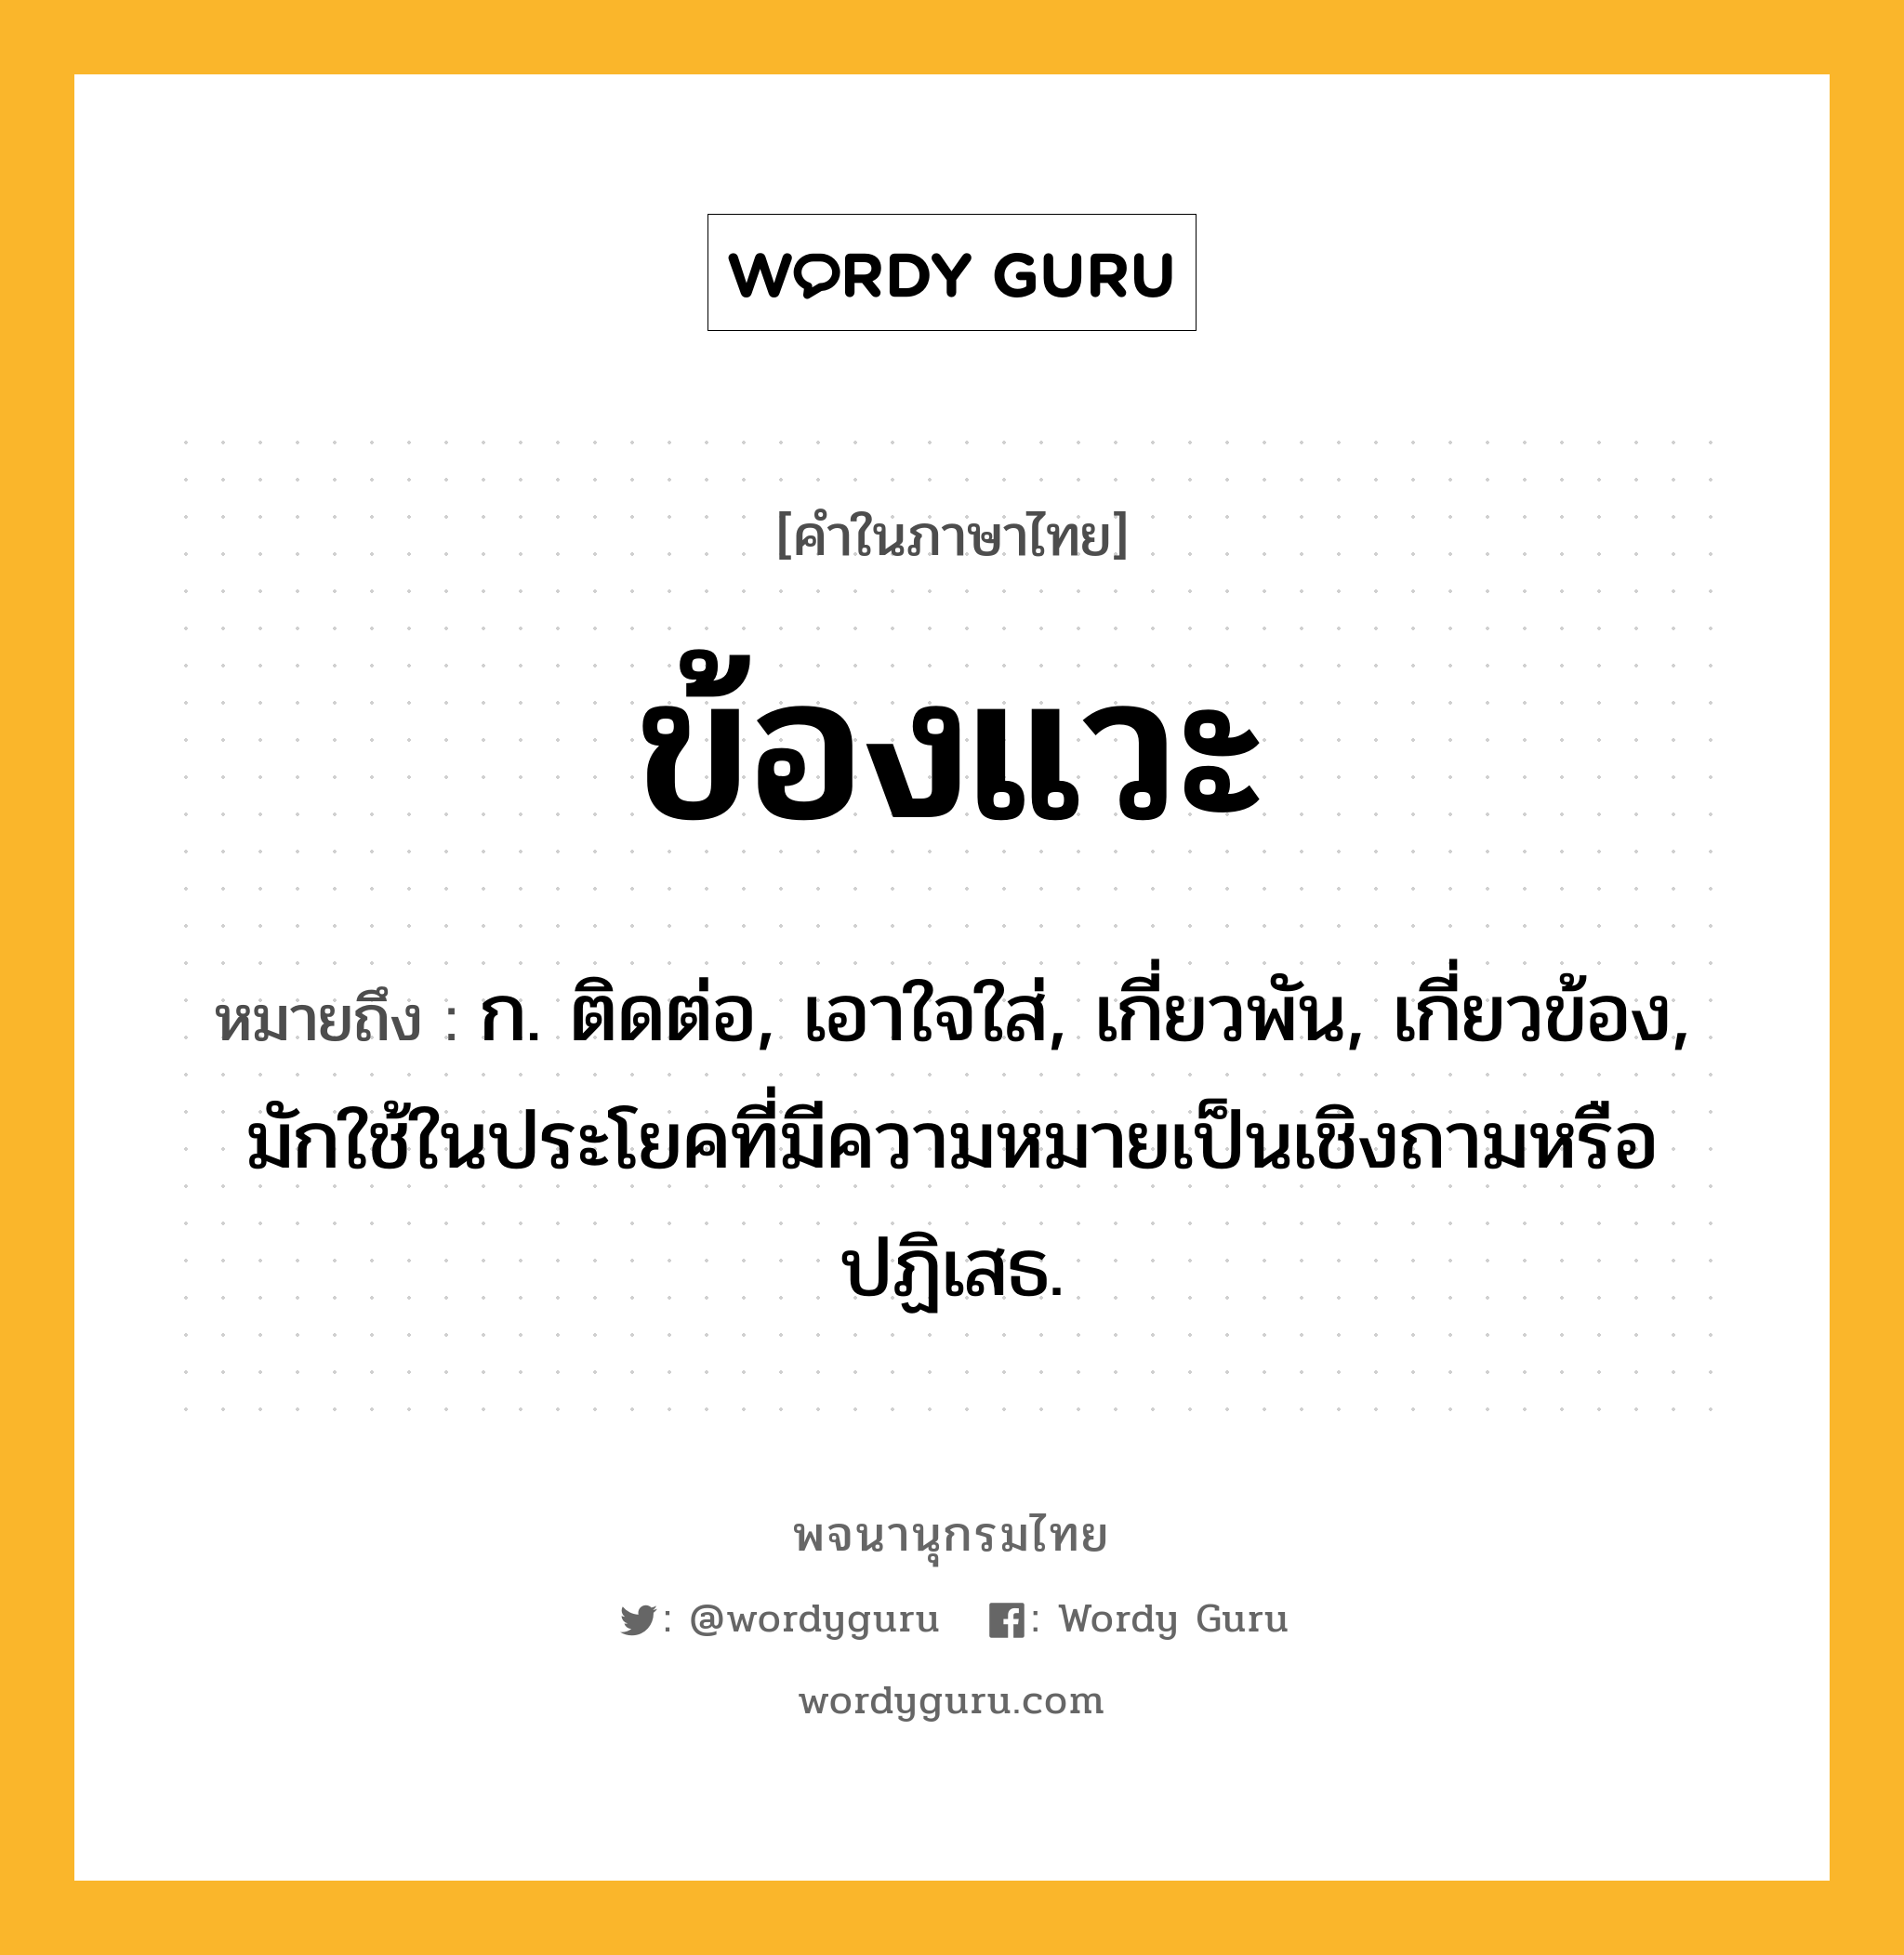 ข้องแวะ หมายถึงอะไร?, คำในภาษาไทย ข้องแวะ หมายถึง ก. ติดต่อ, เอาใจใส่, เกี่ยวพัน, เกี่ยวข้อง, มักใช้ในประโยคที่มีความหมายเป็นเชิงถามหรือปฏิเสธ.